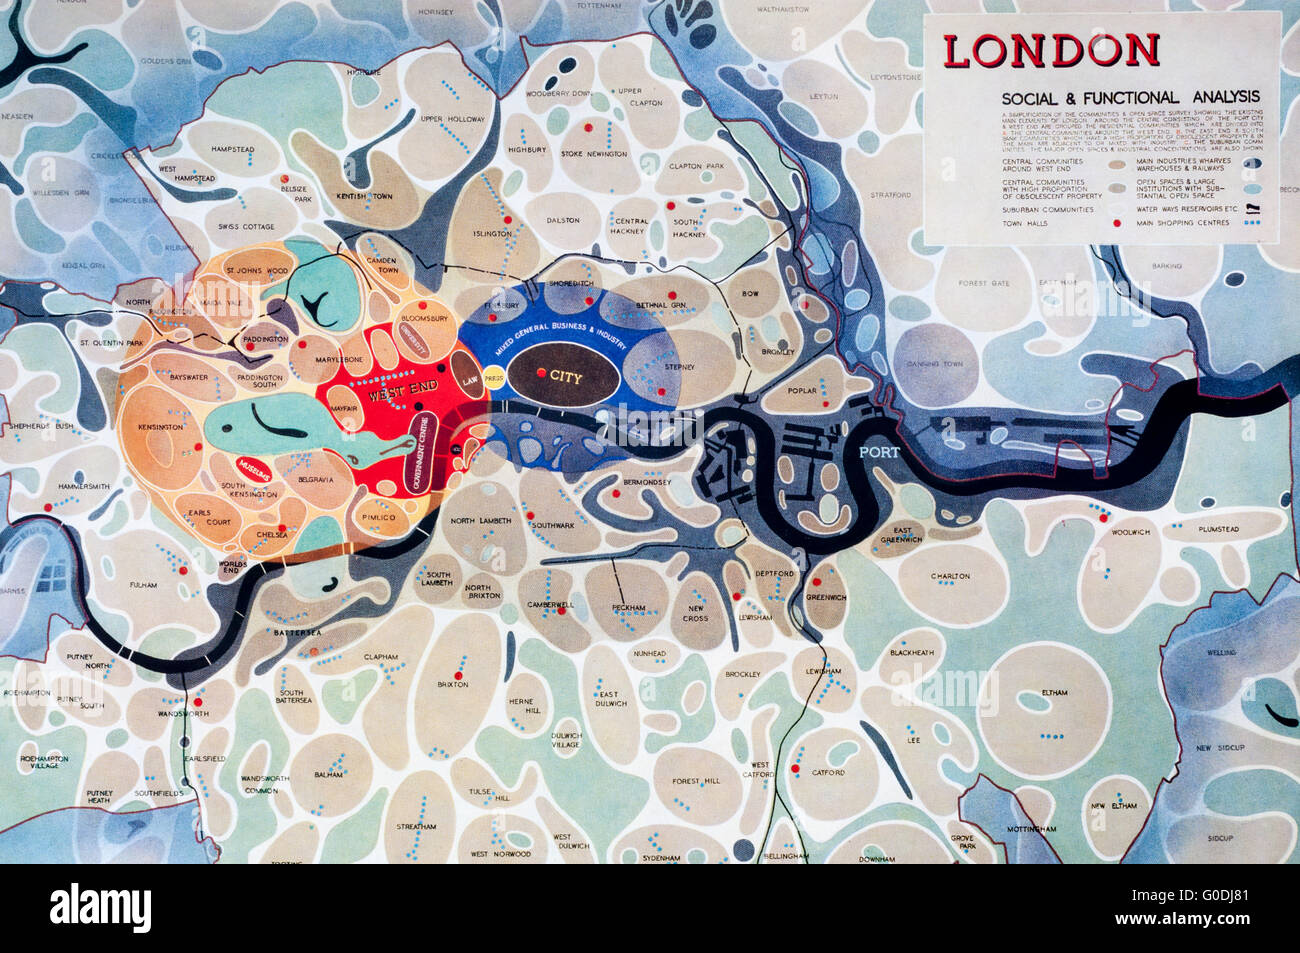 Détail de l'analyse fonctionnelle et sociale de Londres la carte du comté de Londres en 1943 et plan d'Abercrombie Forshaw. Montre les collectivités. Banque D'Images